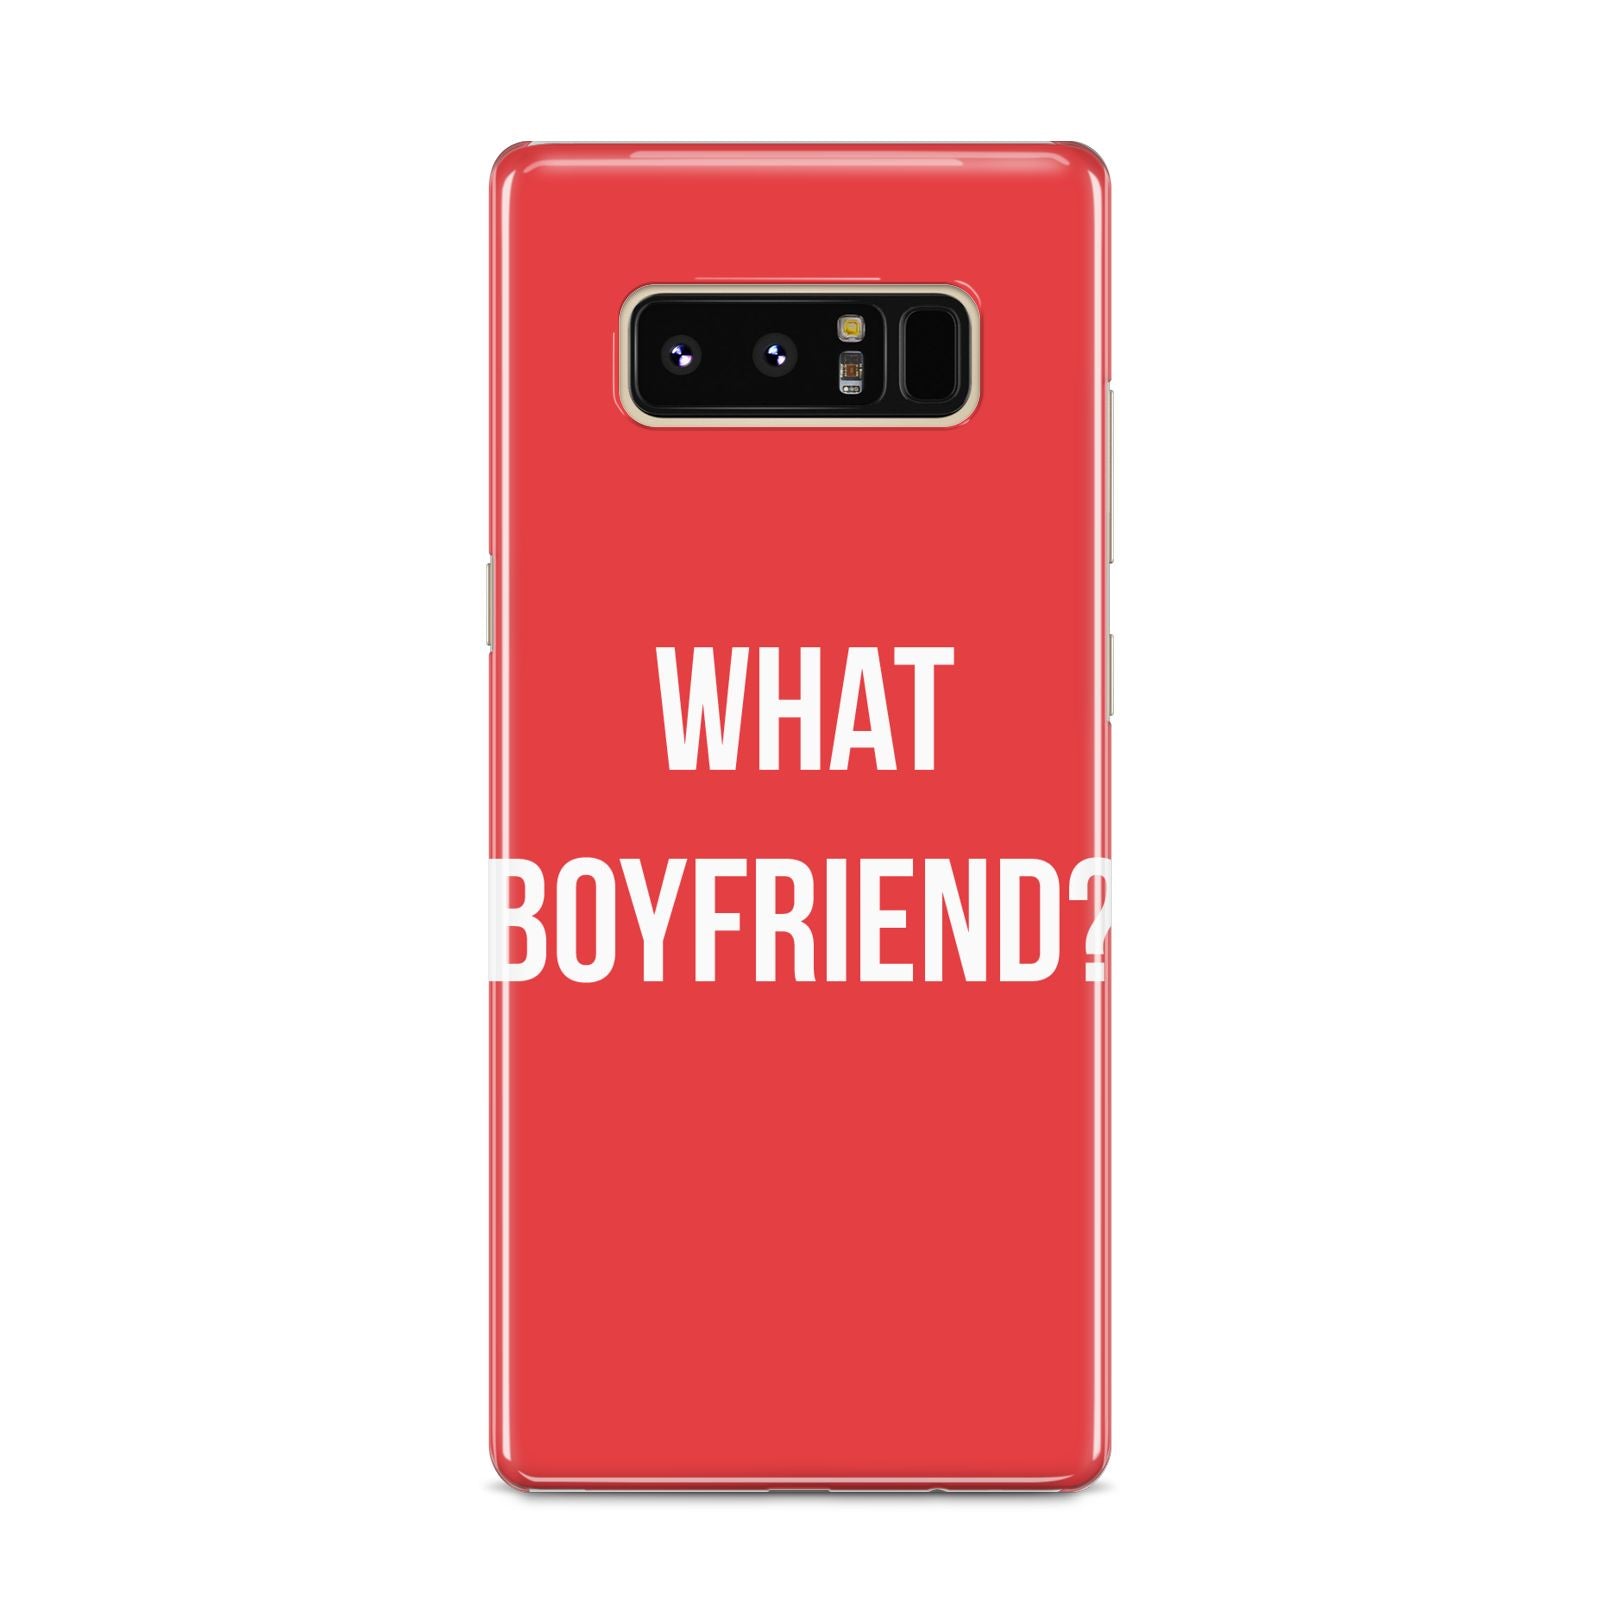 What Boyfriend Samsung Galaxy S8 Case